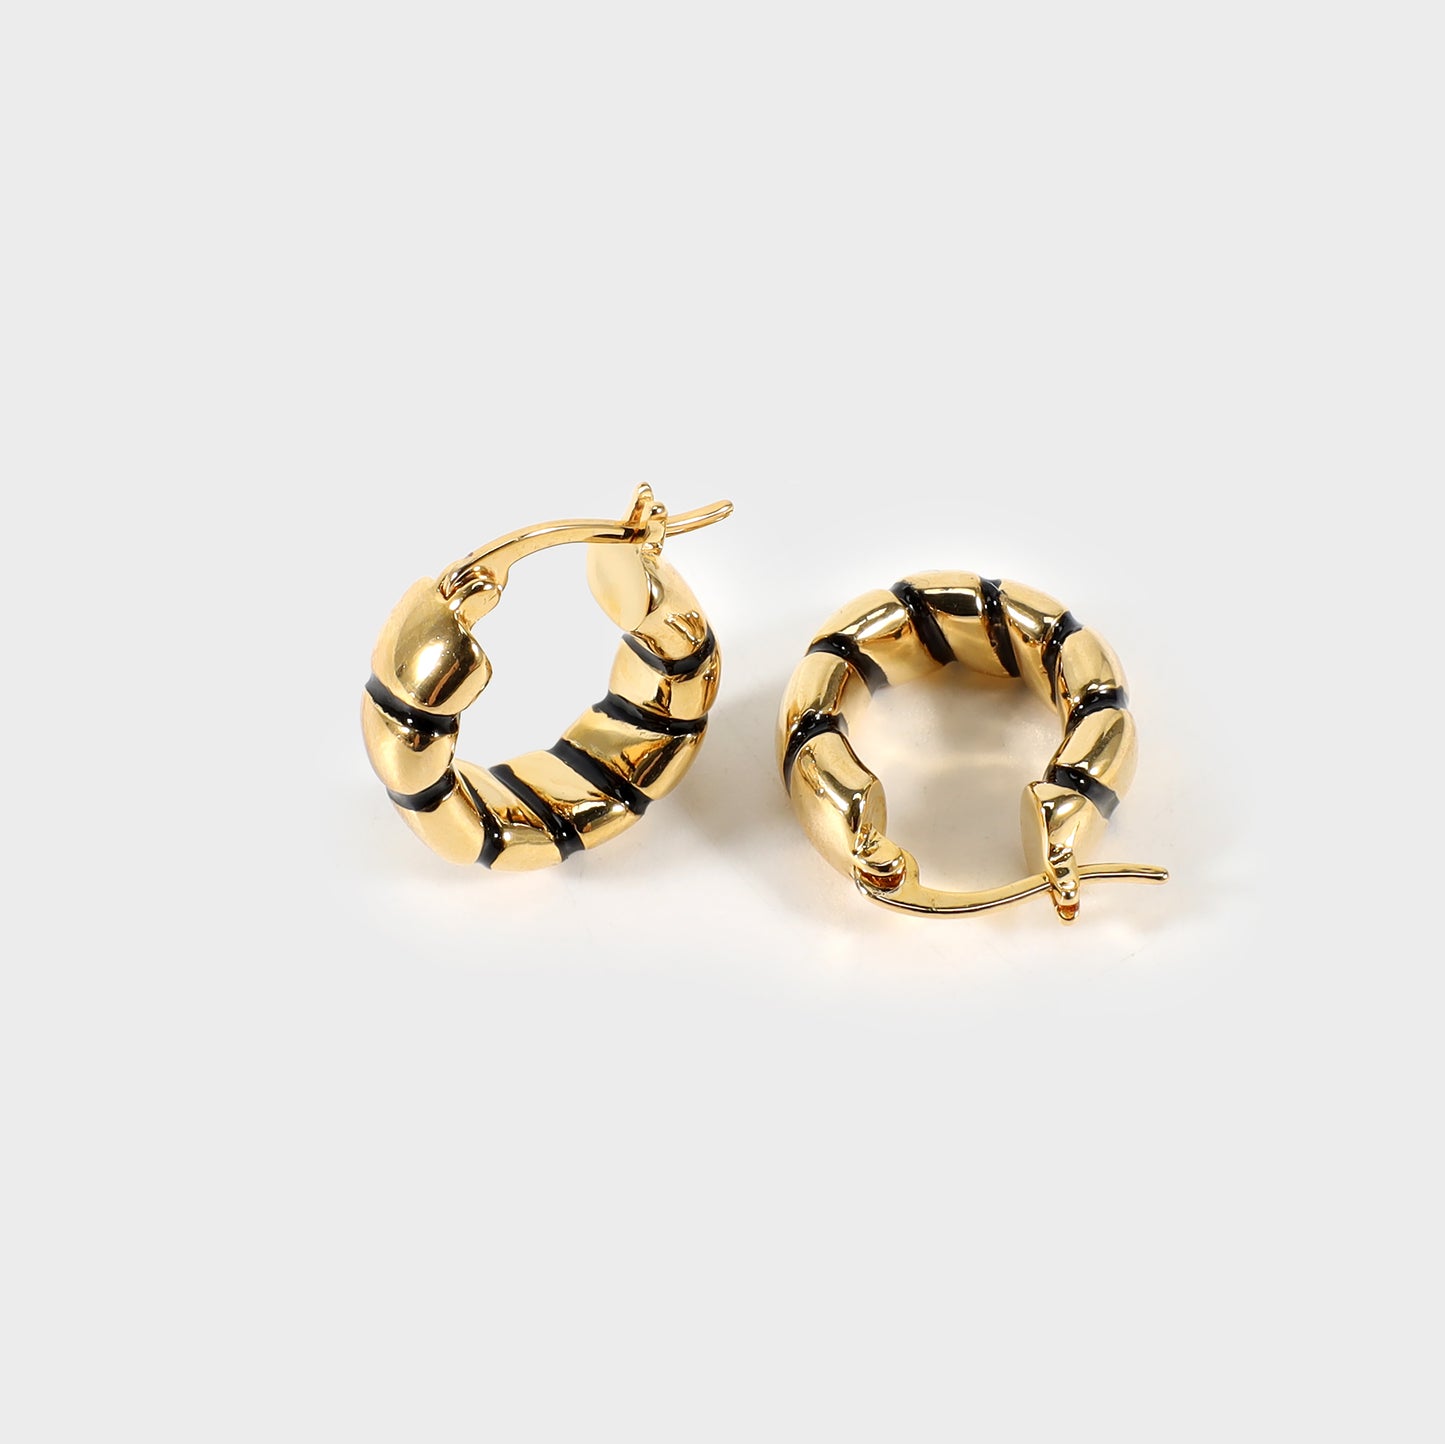 Gold and black hoop earrings